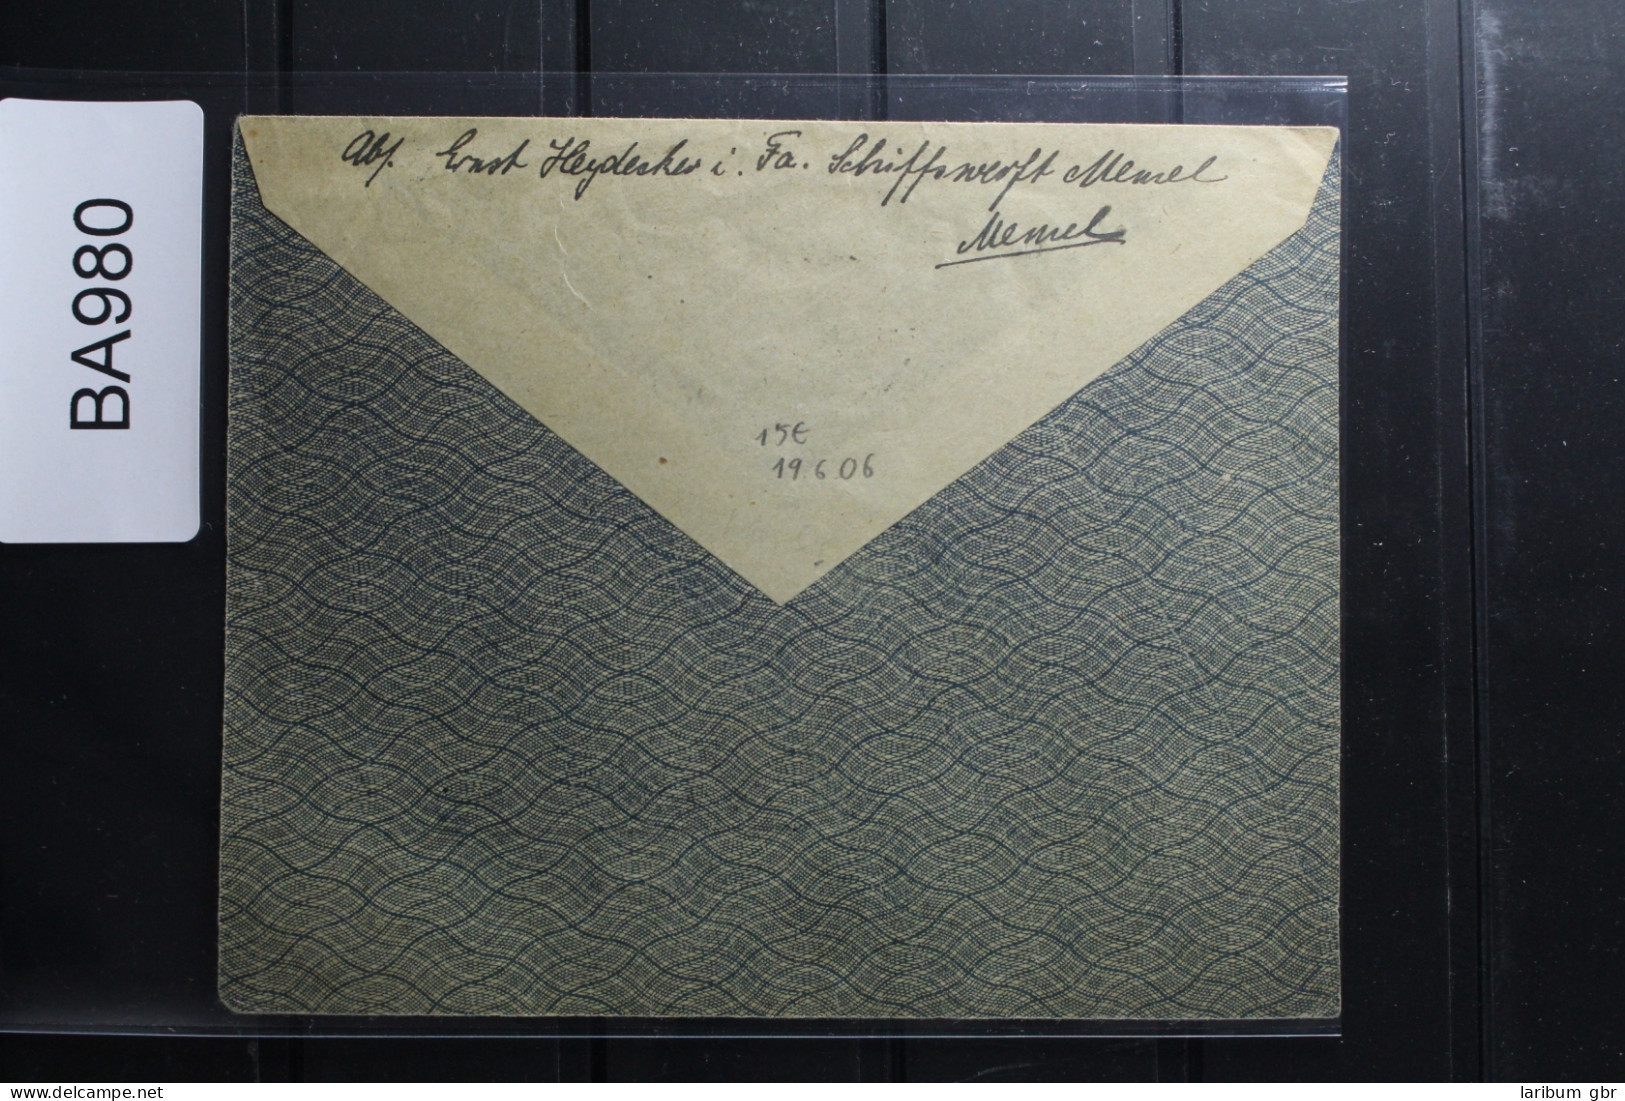 Memel 4x 34, 35 Auf Briefrest Als Mischfrankatur #BA980 - Klaipeda 1923